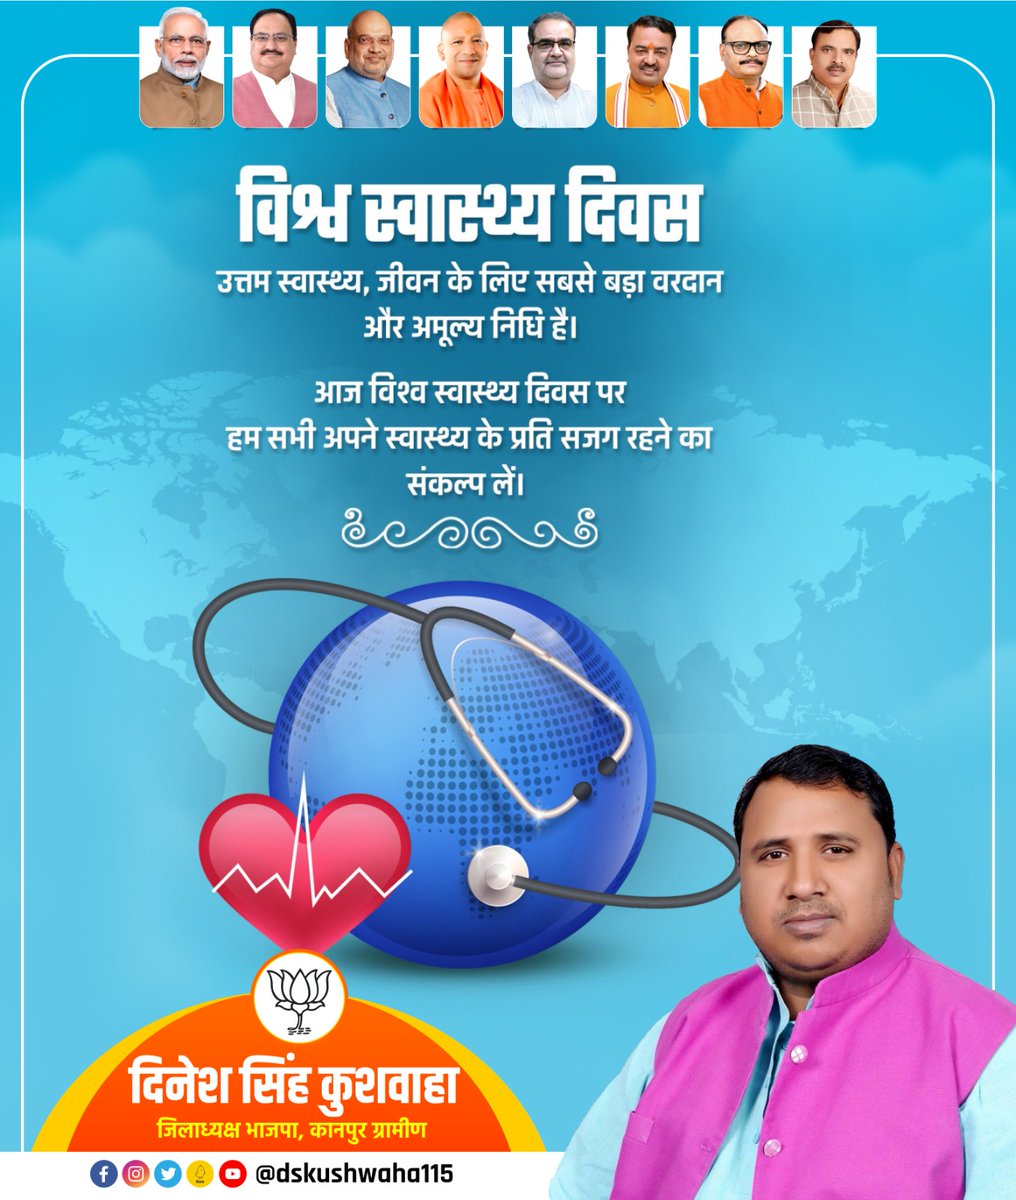 विश्व स्वास्थ्य दिवस की हार्दिक शुभकामनाएं। @BJP4India @bjp4kanpurzone